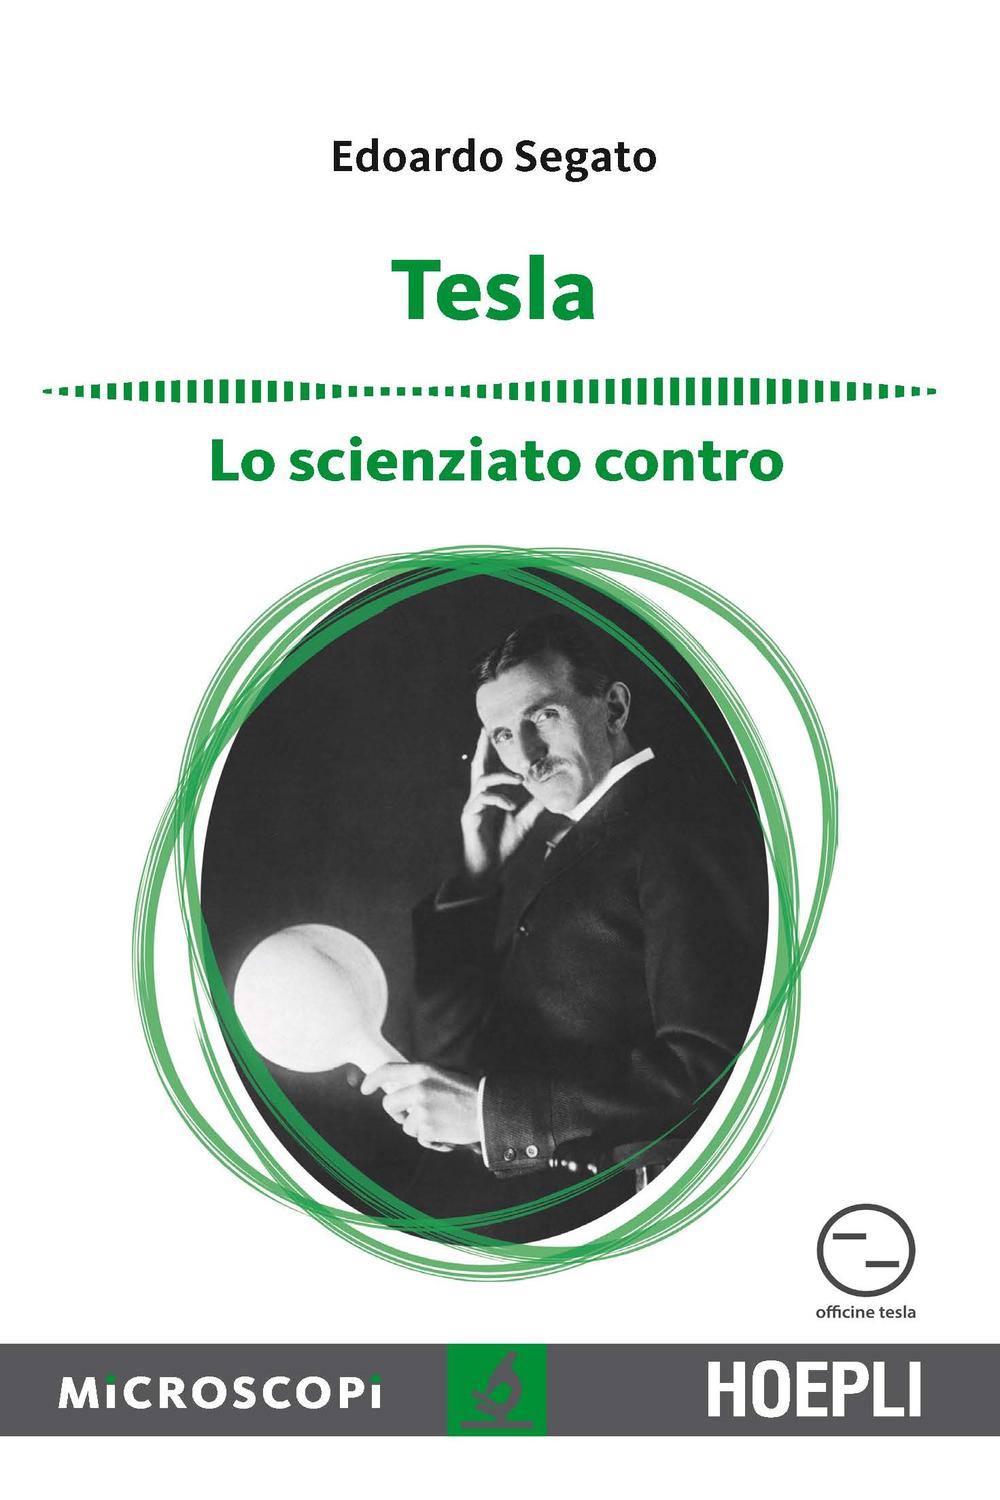 Tesla - Edoardo Segato